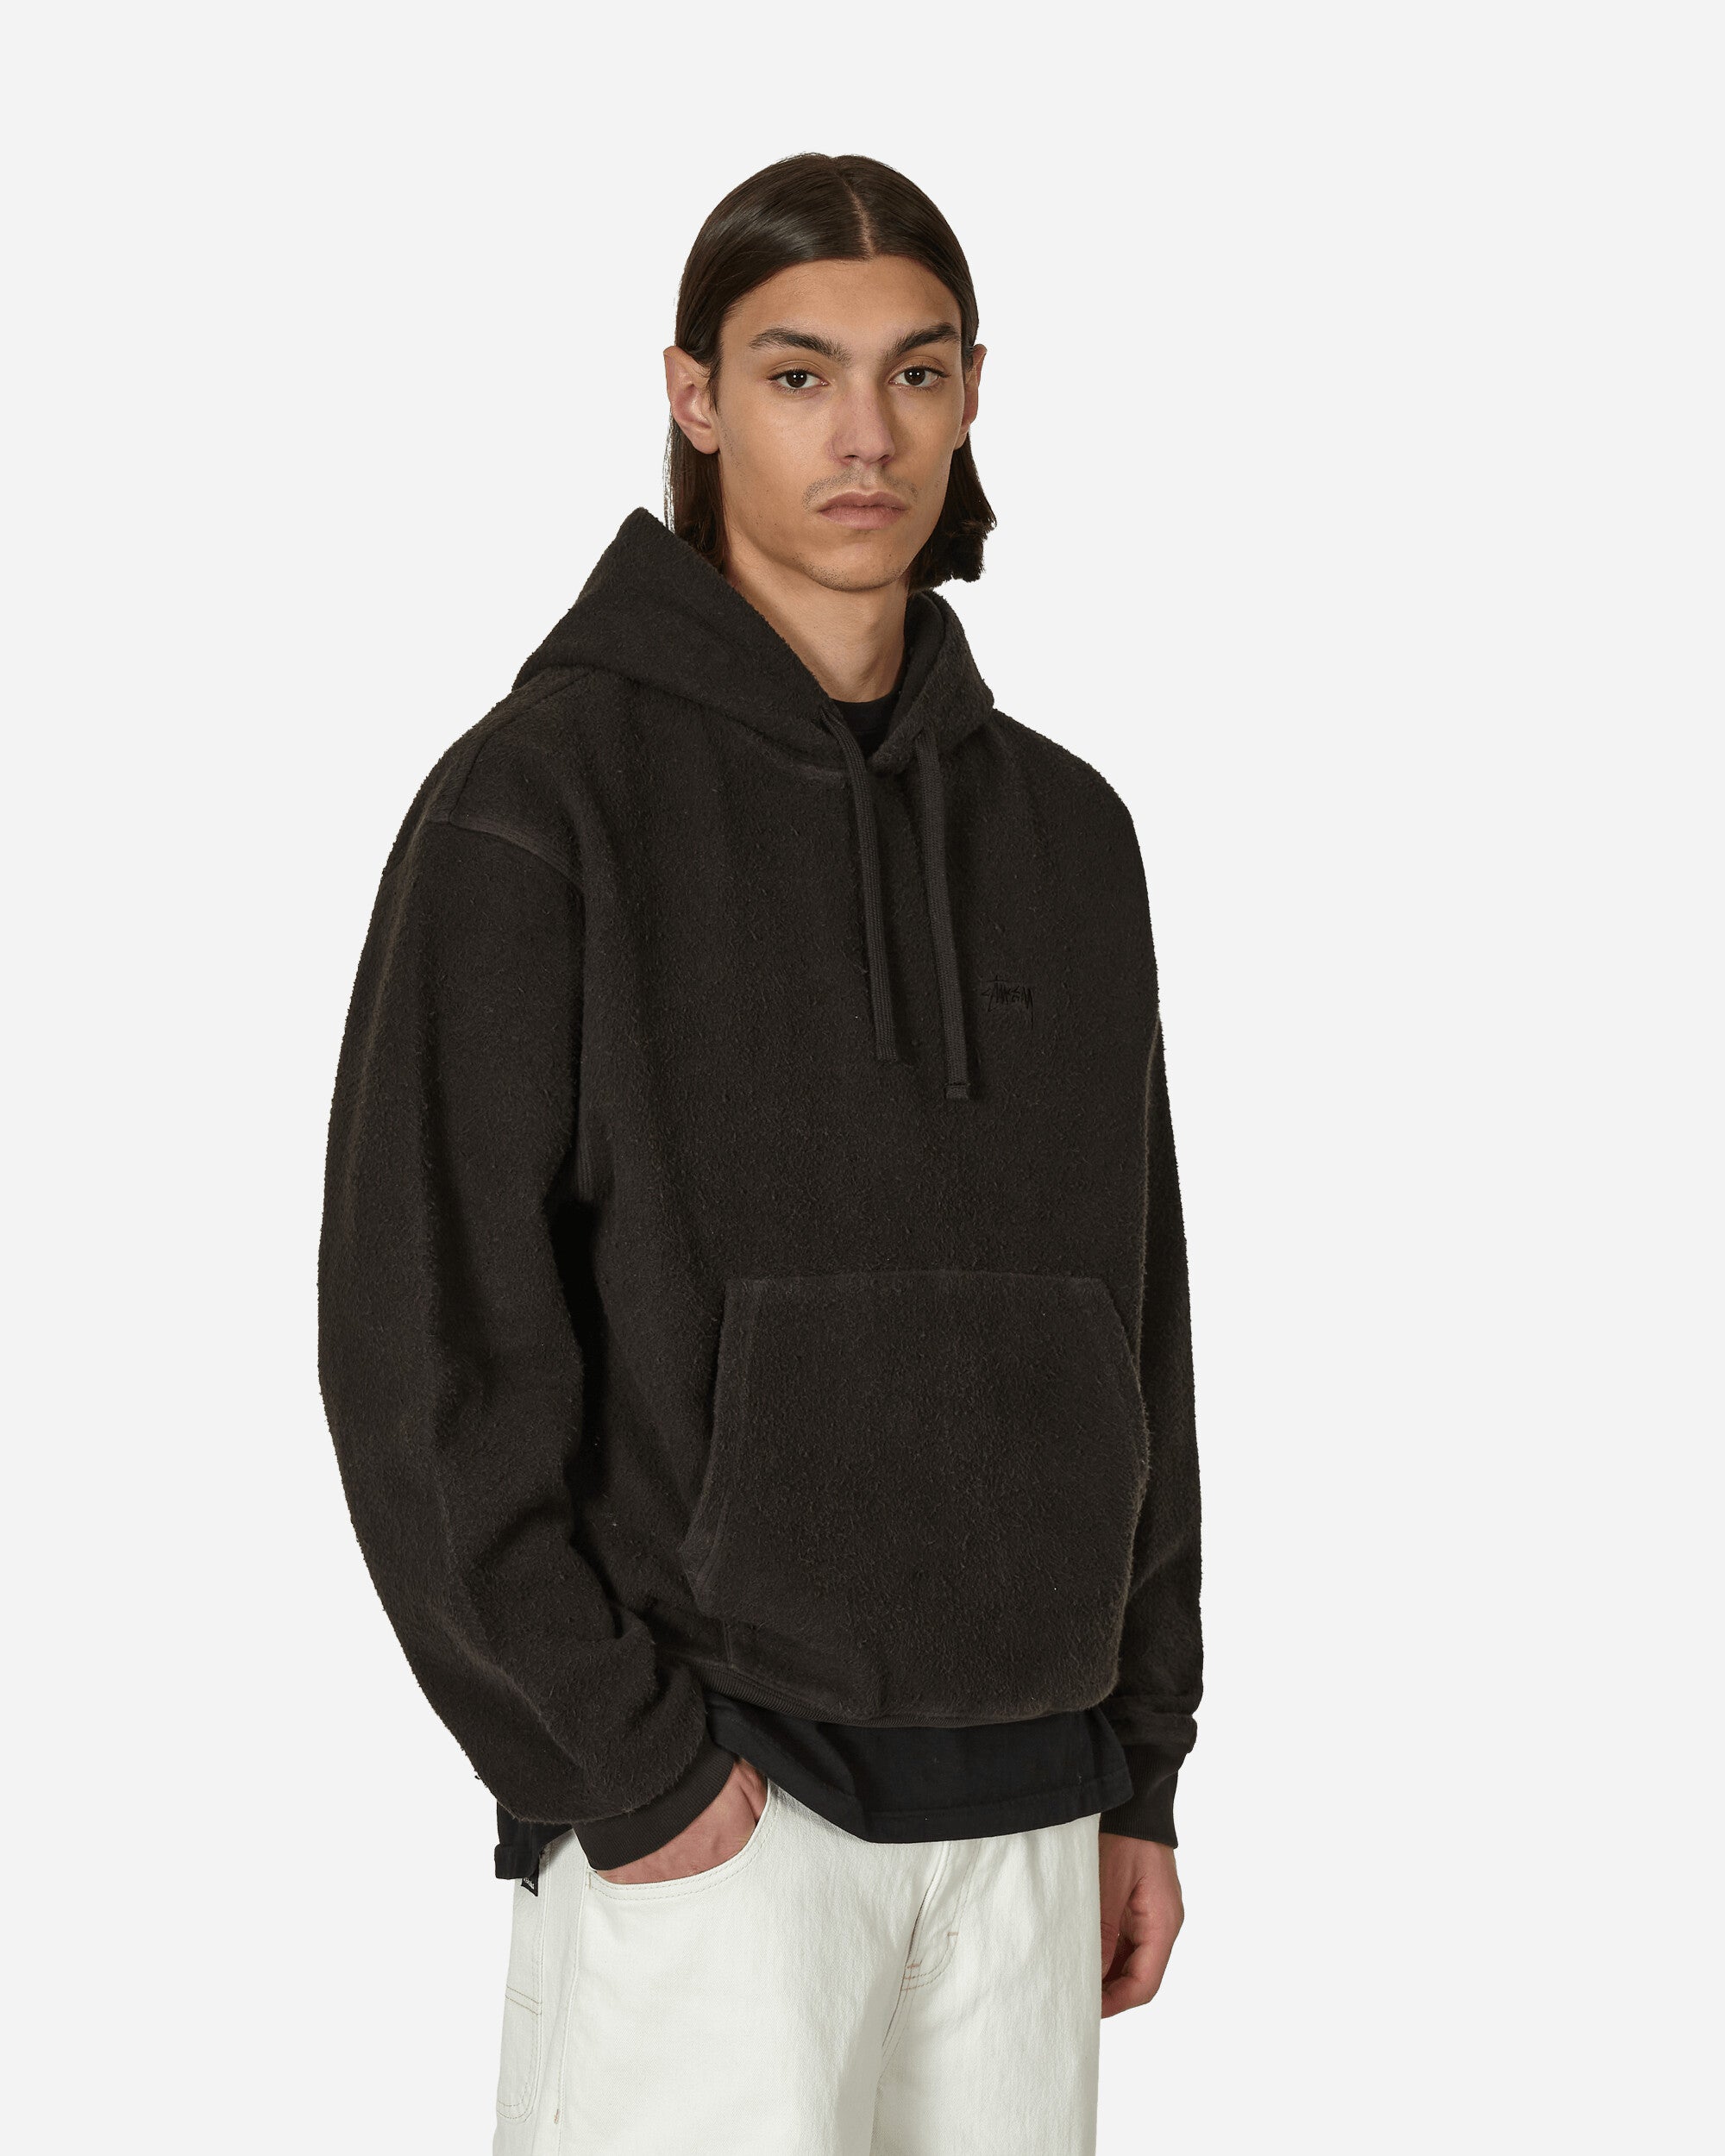 Inside Out Fleece Hooded Sweatshirt Black